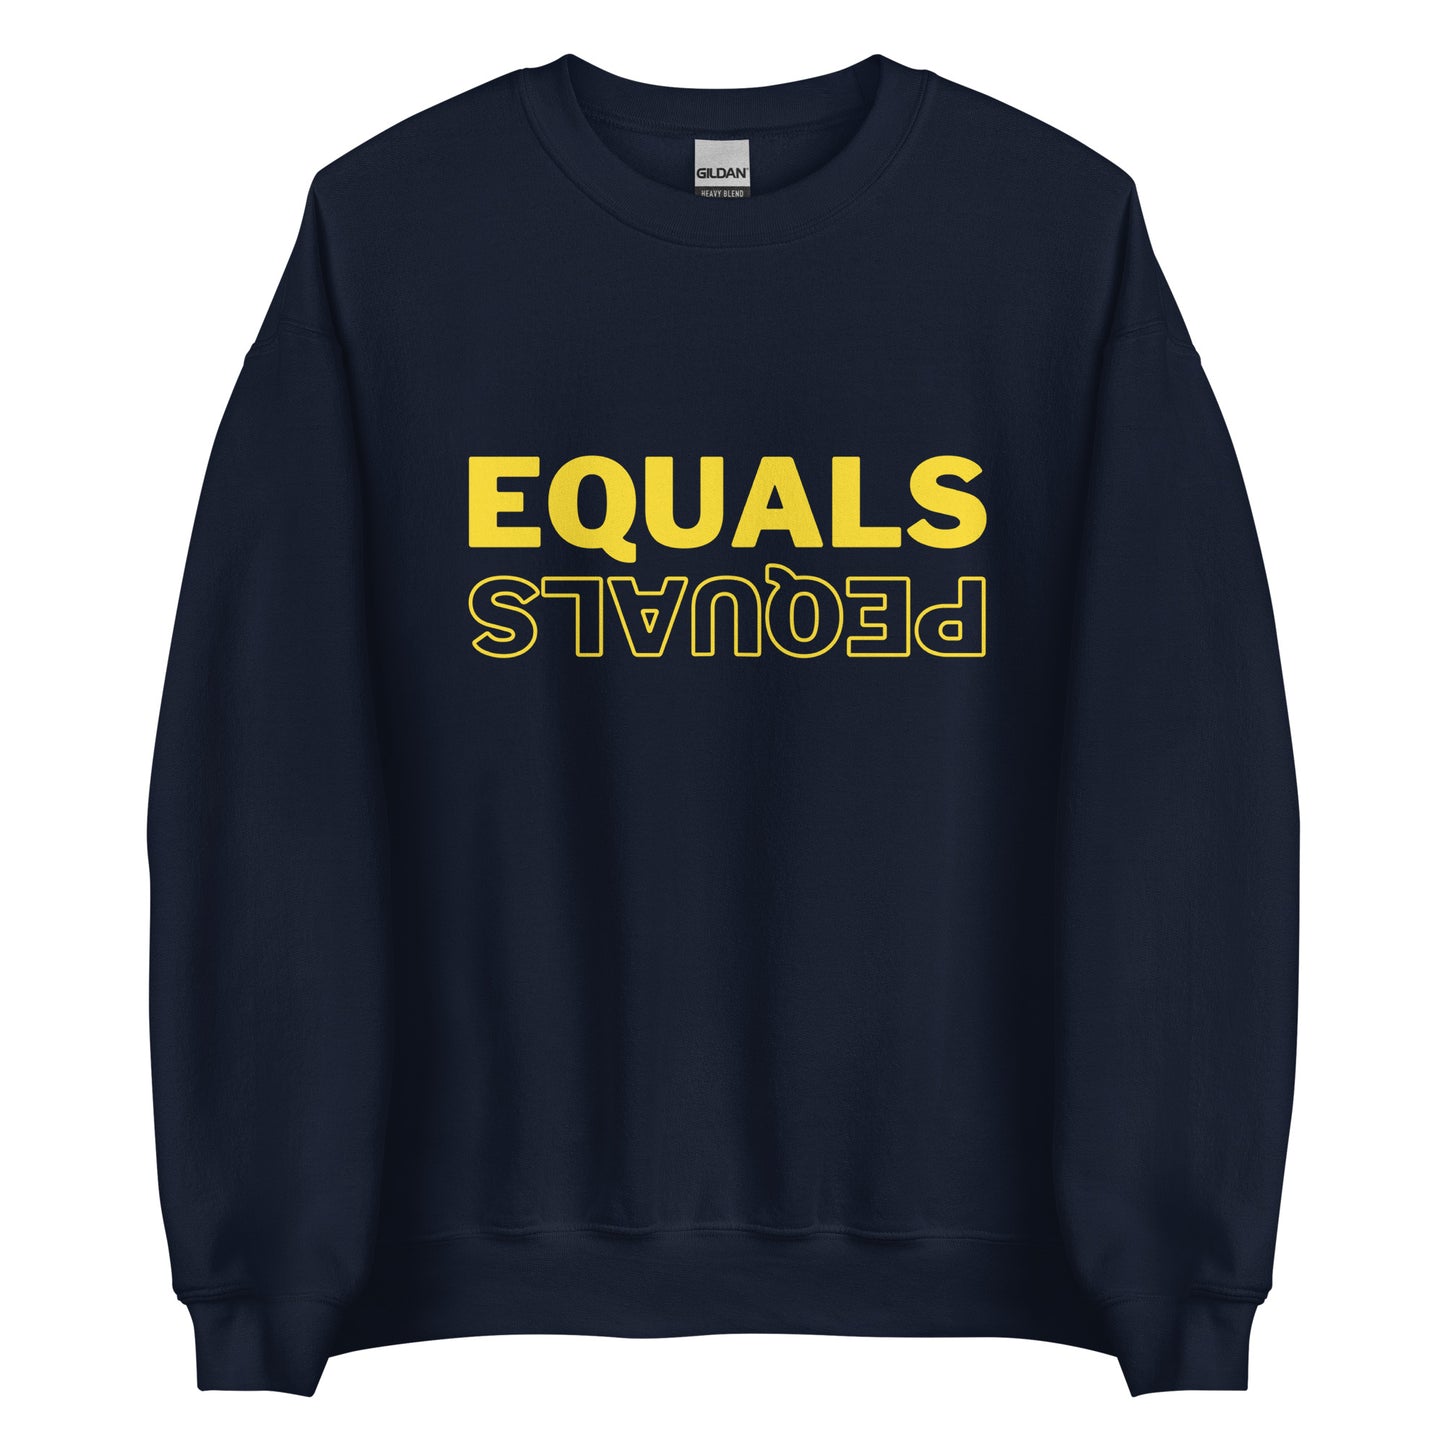 Equals Pequals Comedy Quote Navy Sweatshirt